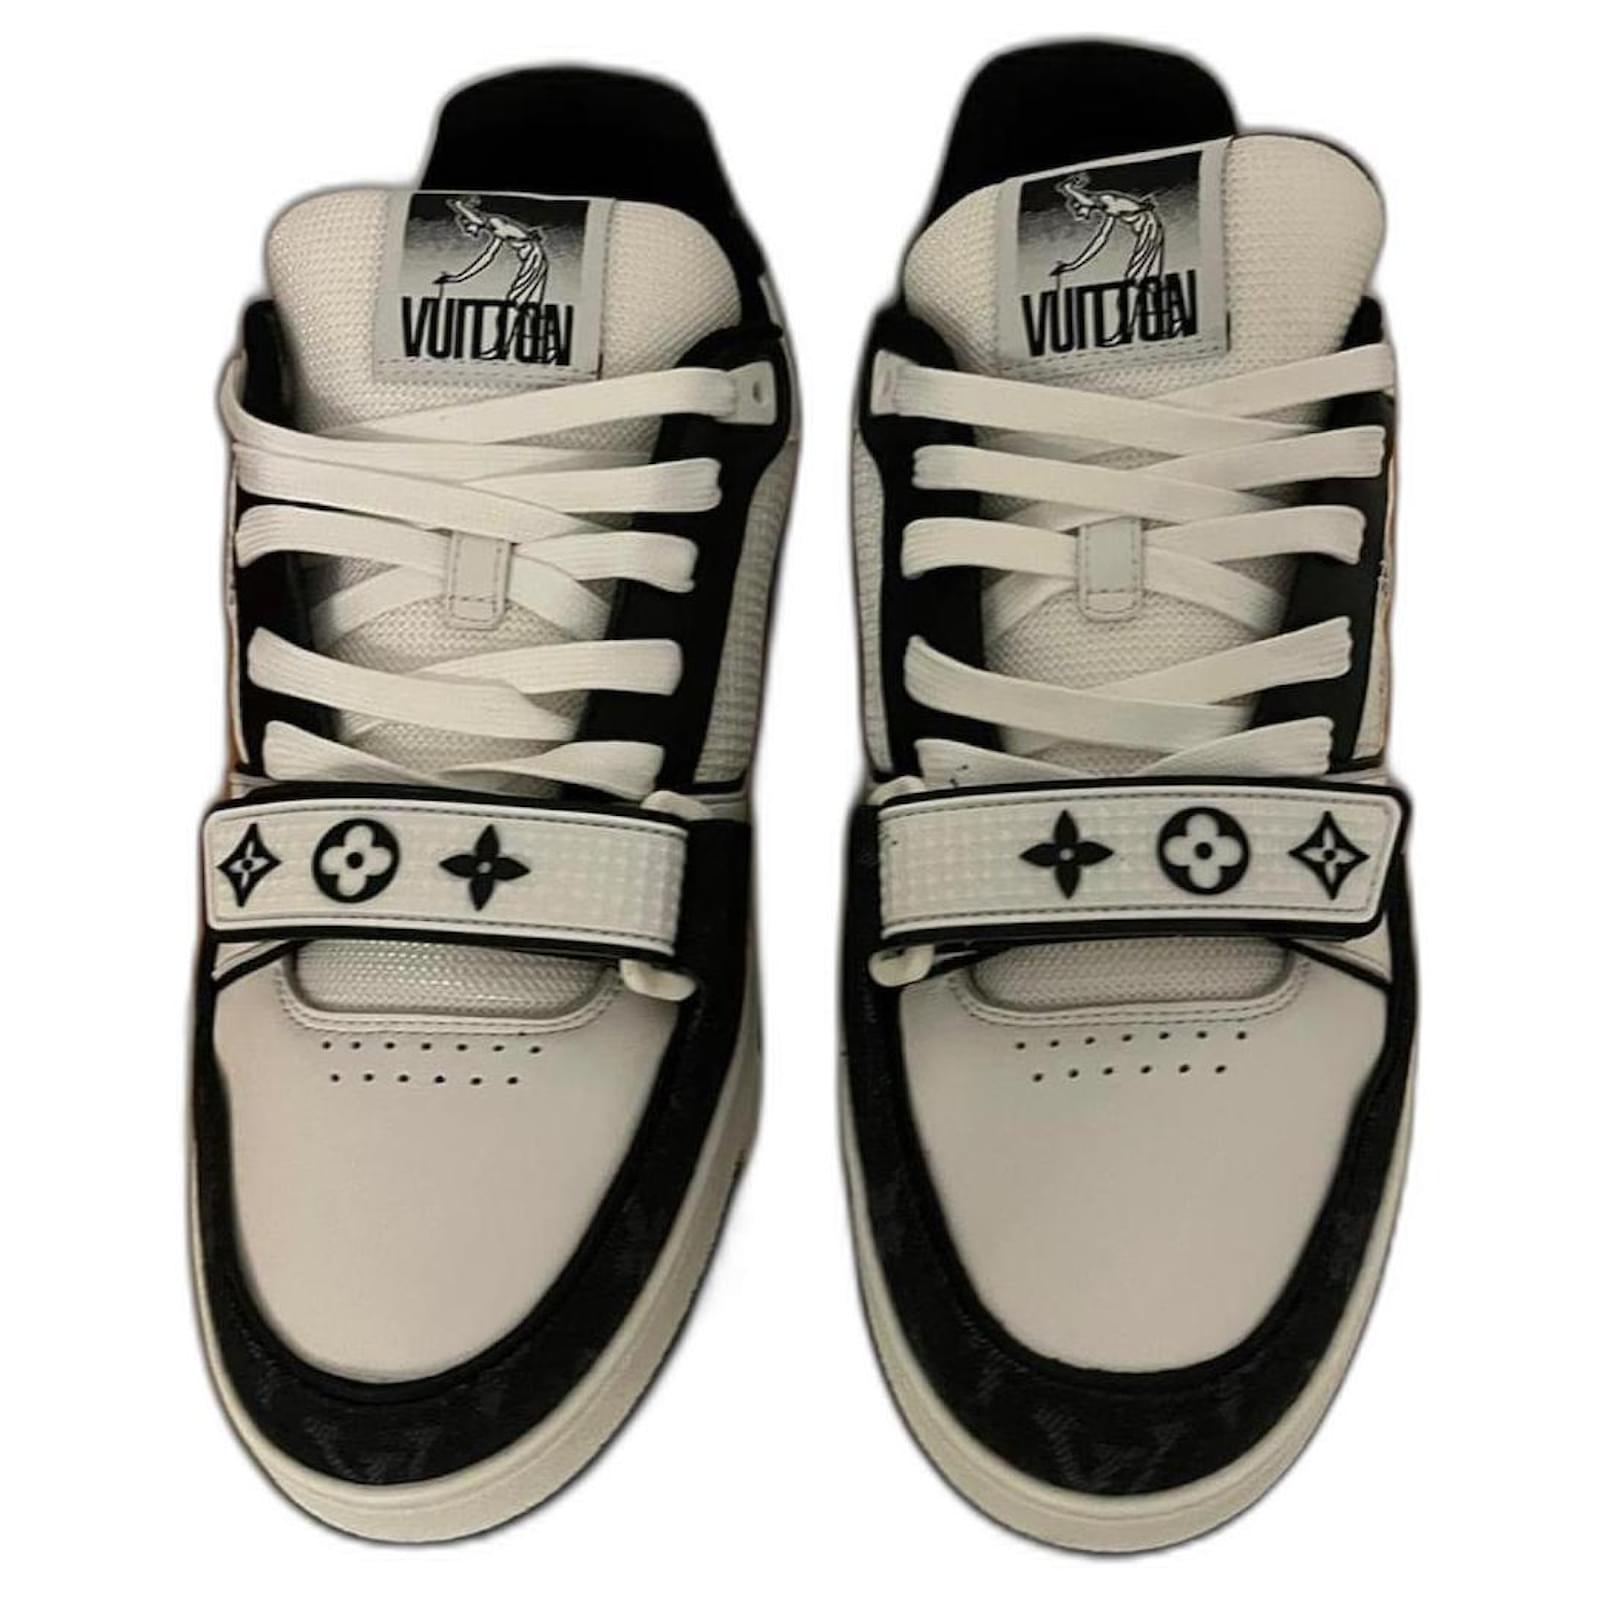 Zapatillas de hombre Louis Vuitton: modelos con velcro, blanco y otros  colores, con cordones y otros. Sugerencias de selección